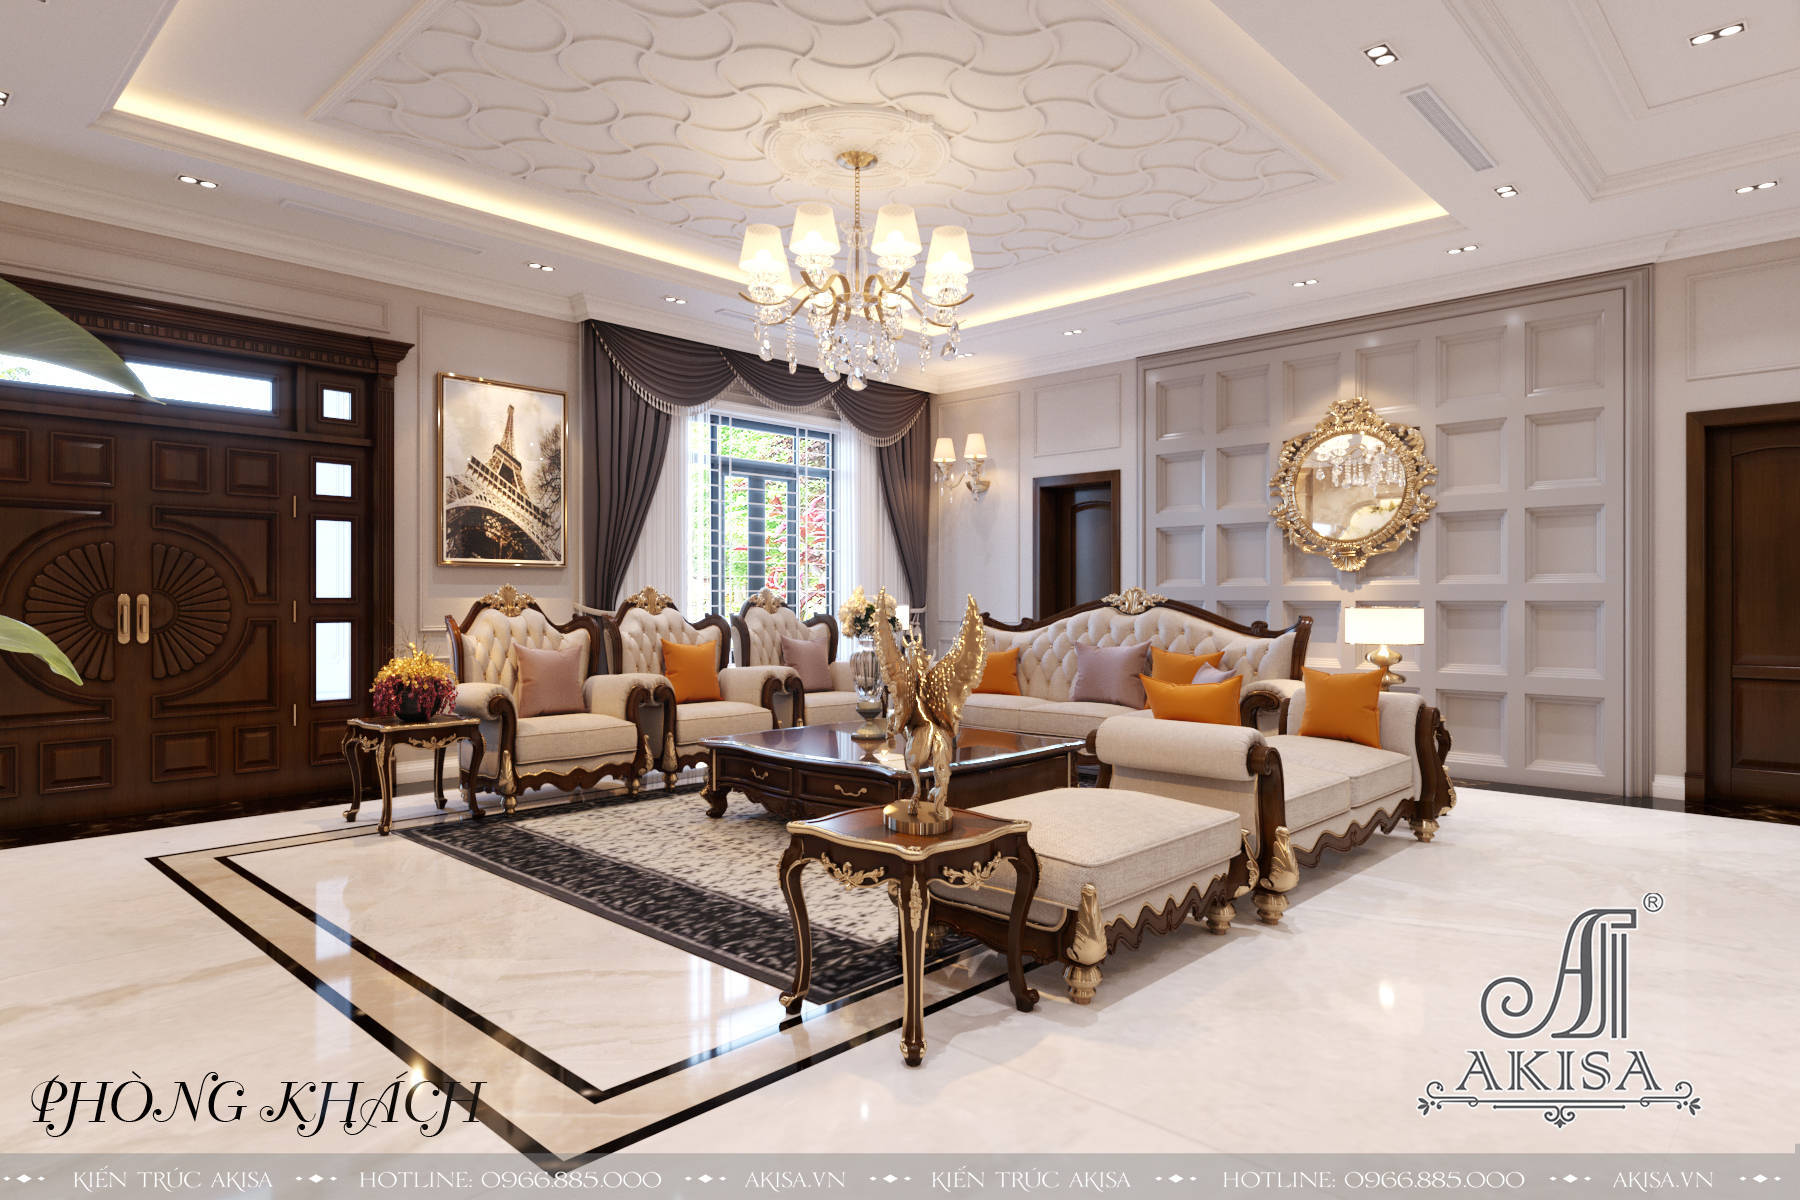 Không gian nội thất theo phong cách tân cổ điển mang tới vẻ đẹp sang trọng, tinh tế, thể hiện phong cách và cá tính của chủ đầu tư